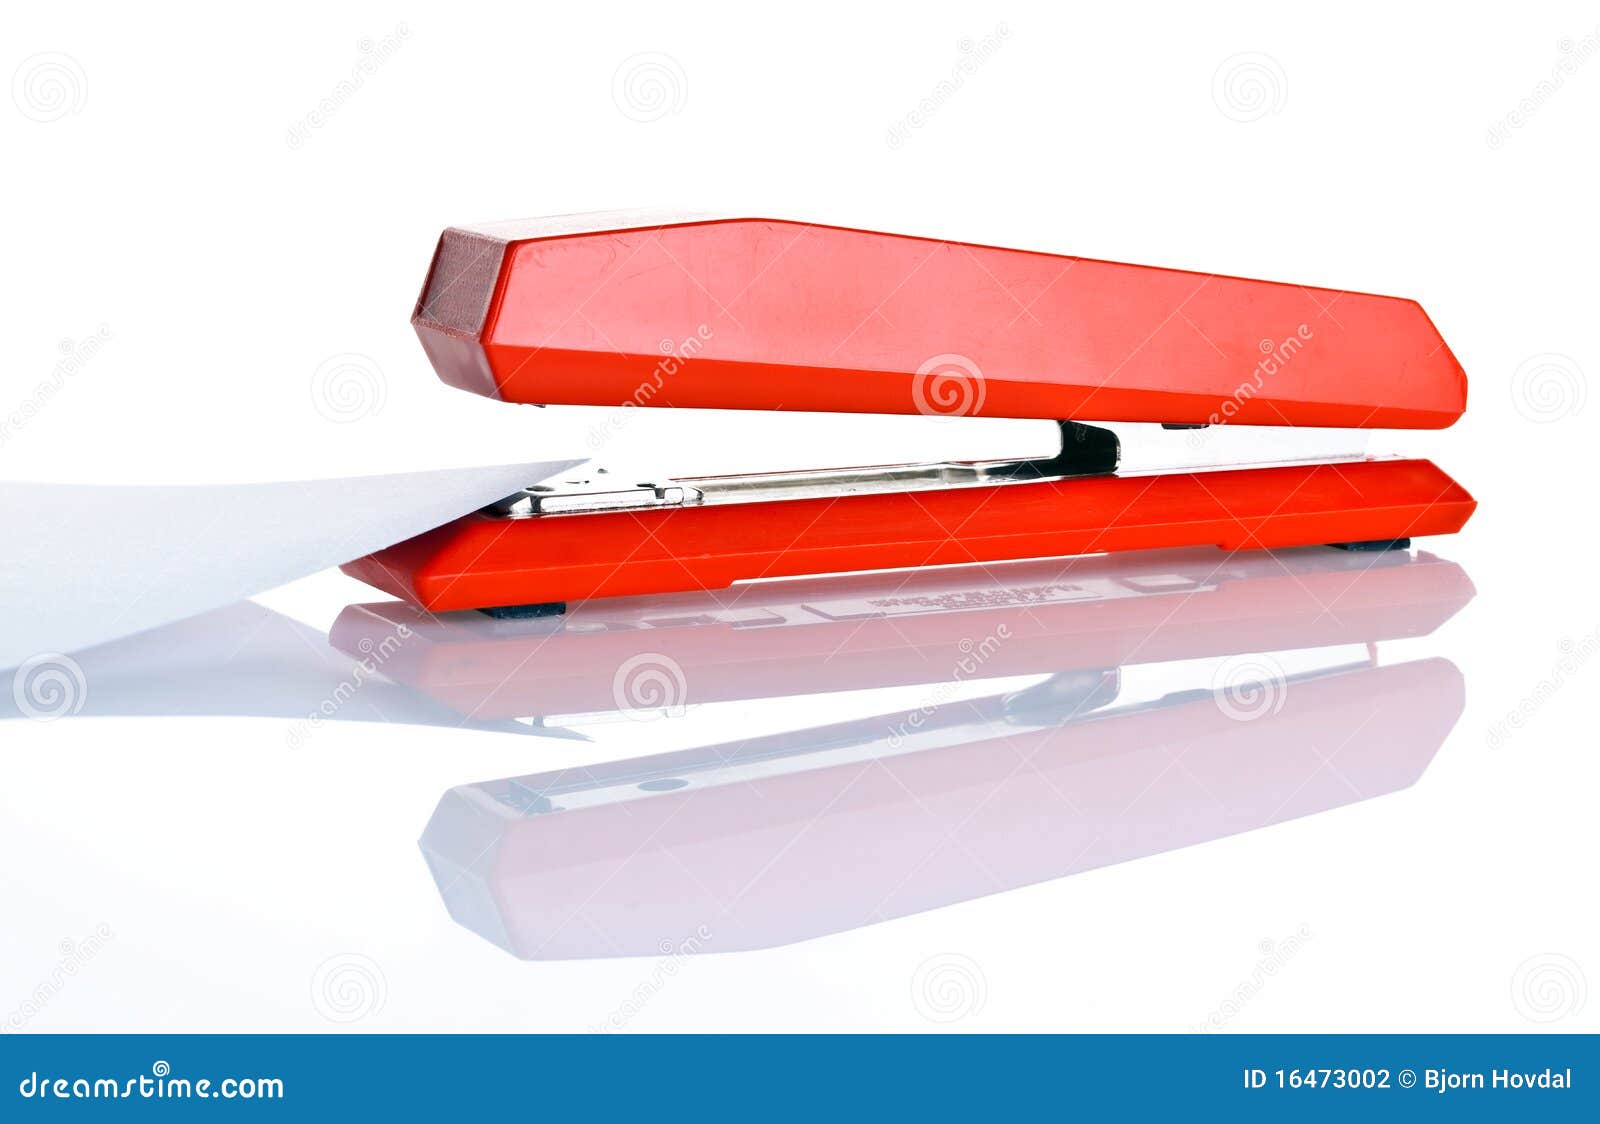 stapler